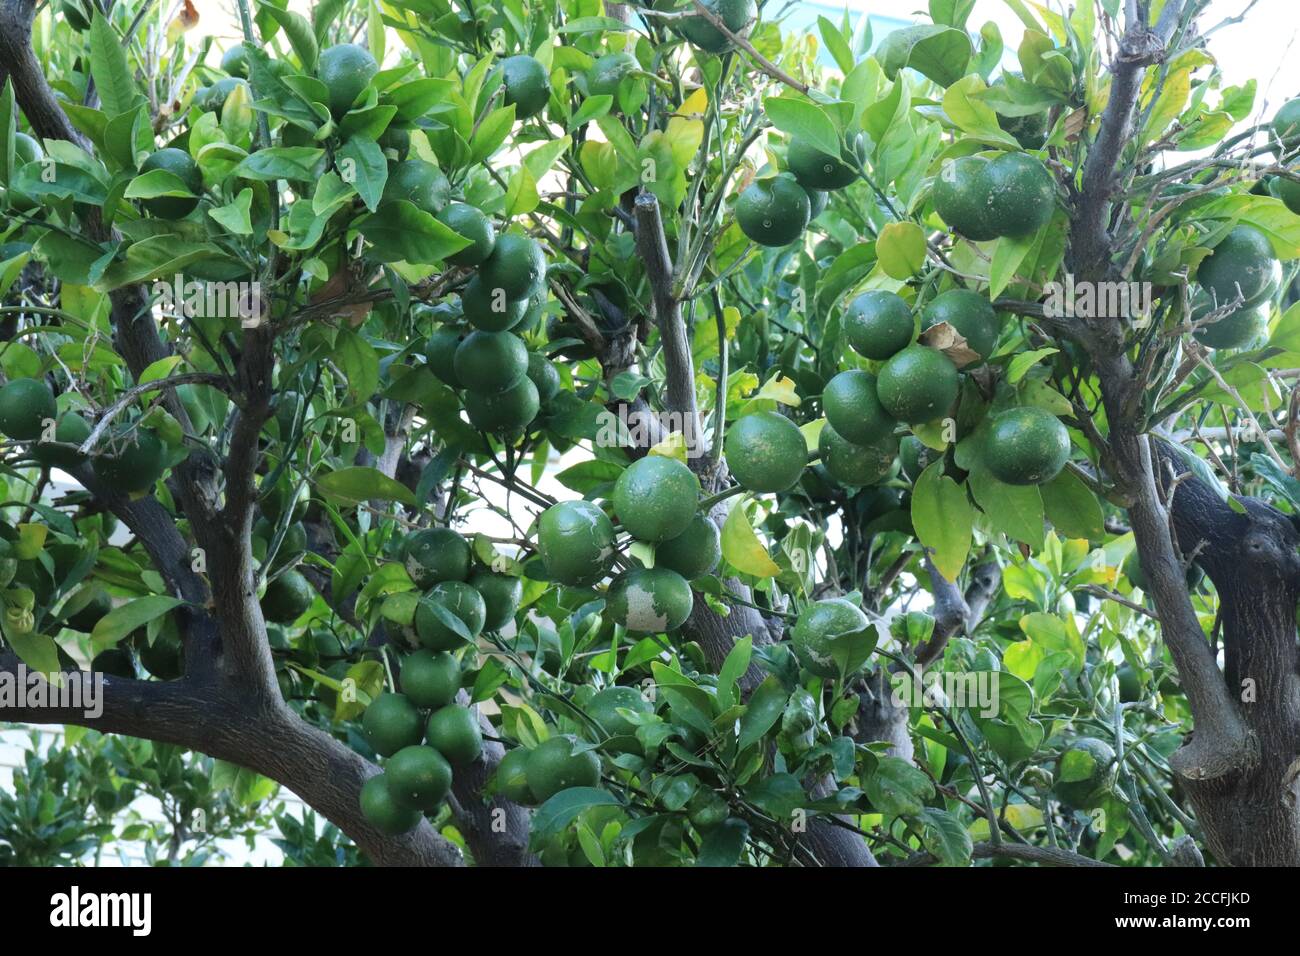 The mandarin orange (lat. Citrus reticulata), also known as the mandarin or mandarine, green tree plants Stock Photo